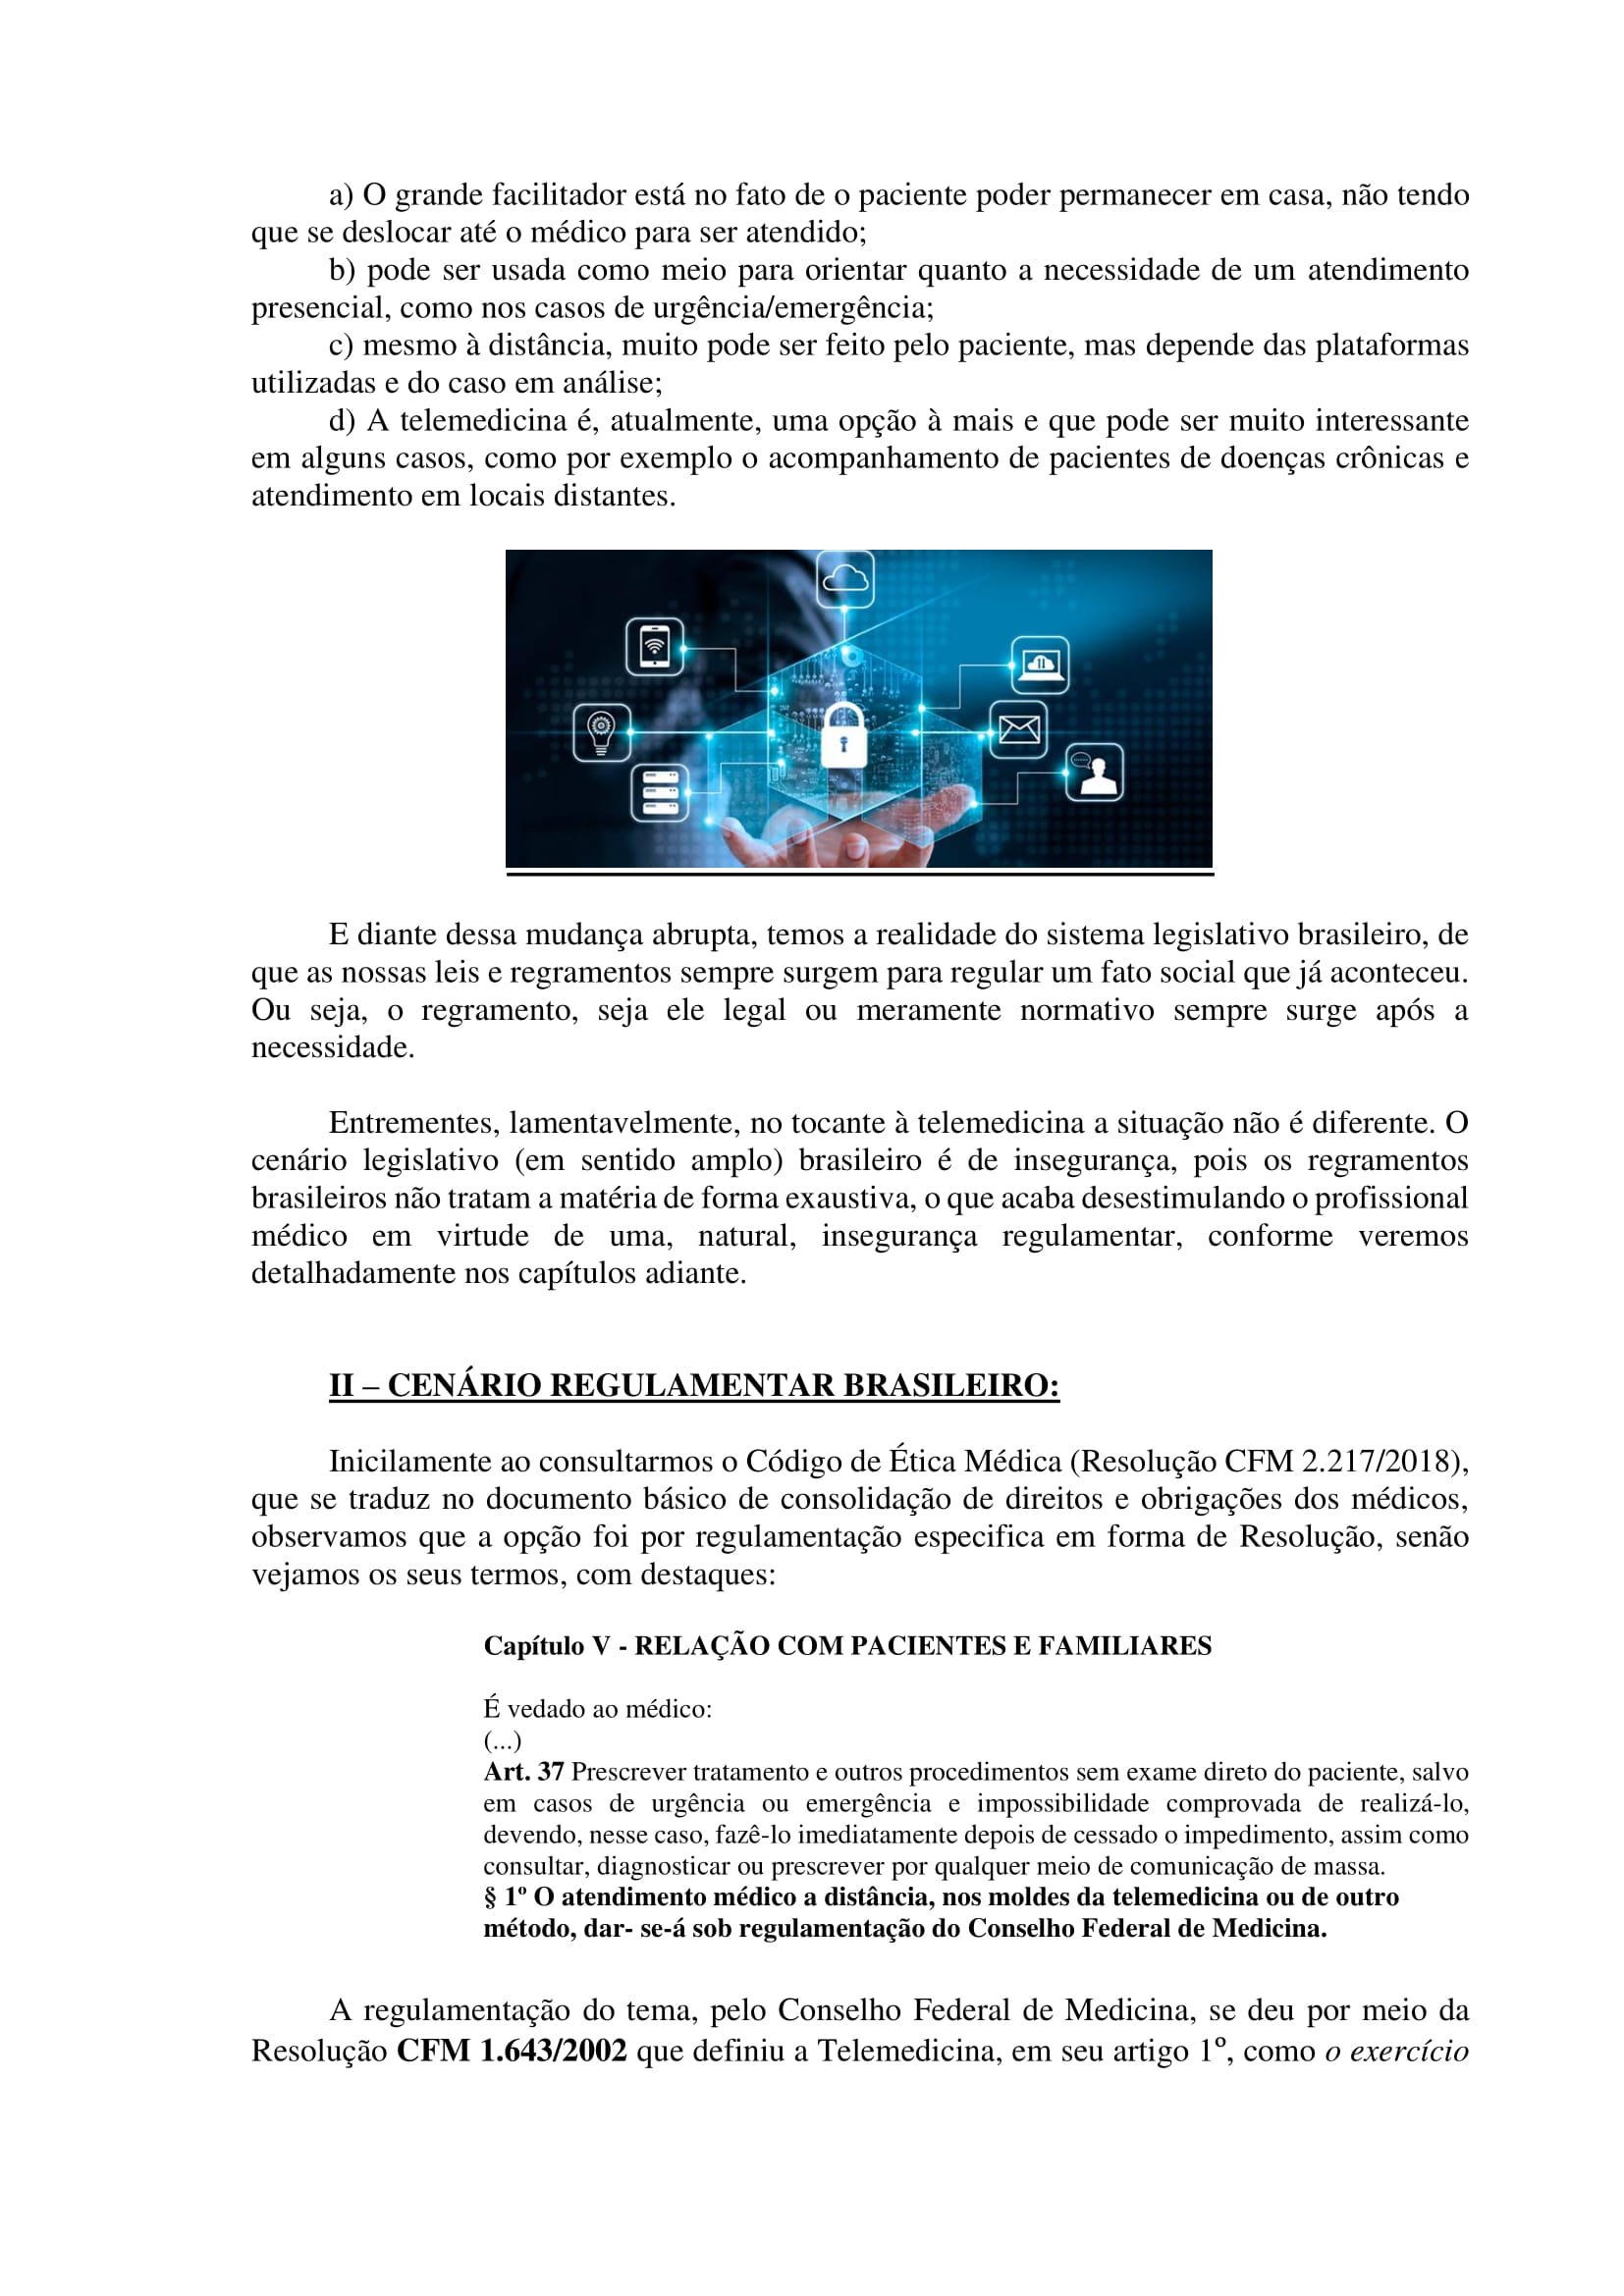 Artigo sobre Telemedicina e suas implicações regulatórias - Tiago Torres-02